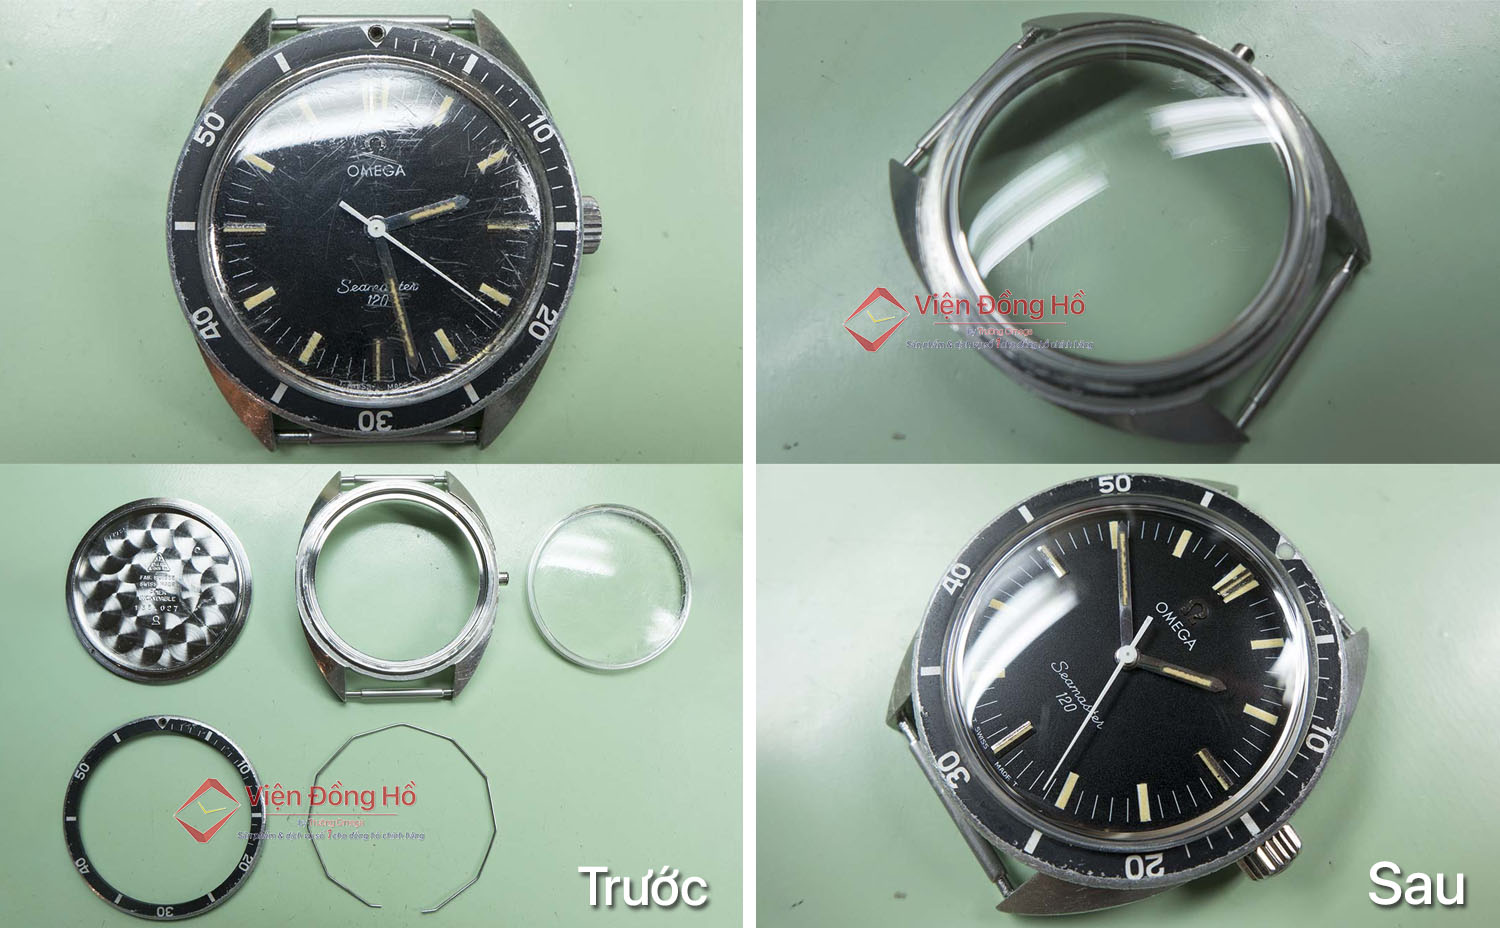 Thay mặt kính mica cho đồng hồ Omega Seamaster 150. Giá kính hãng khoảng 200$ còn kính thay thế giá 600.000đ (thời giá năm 2020)